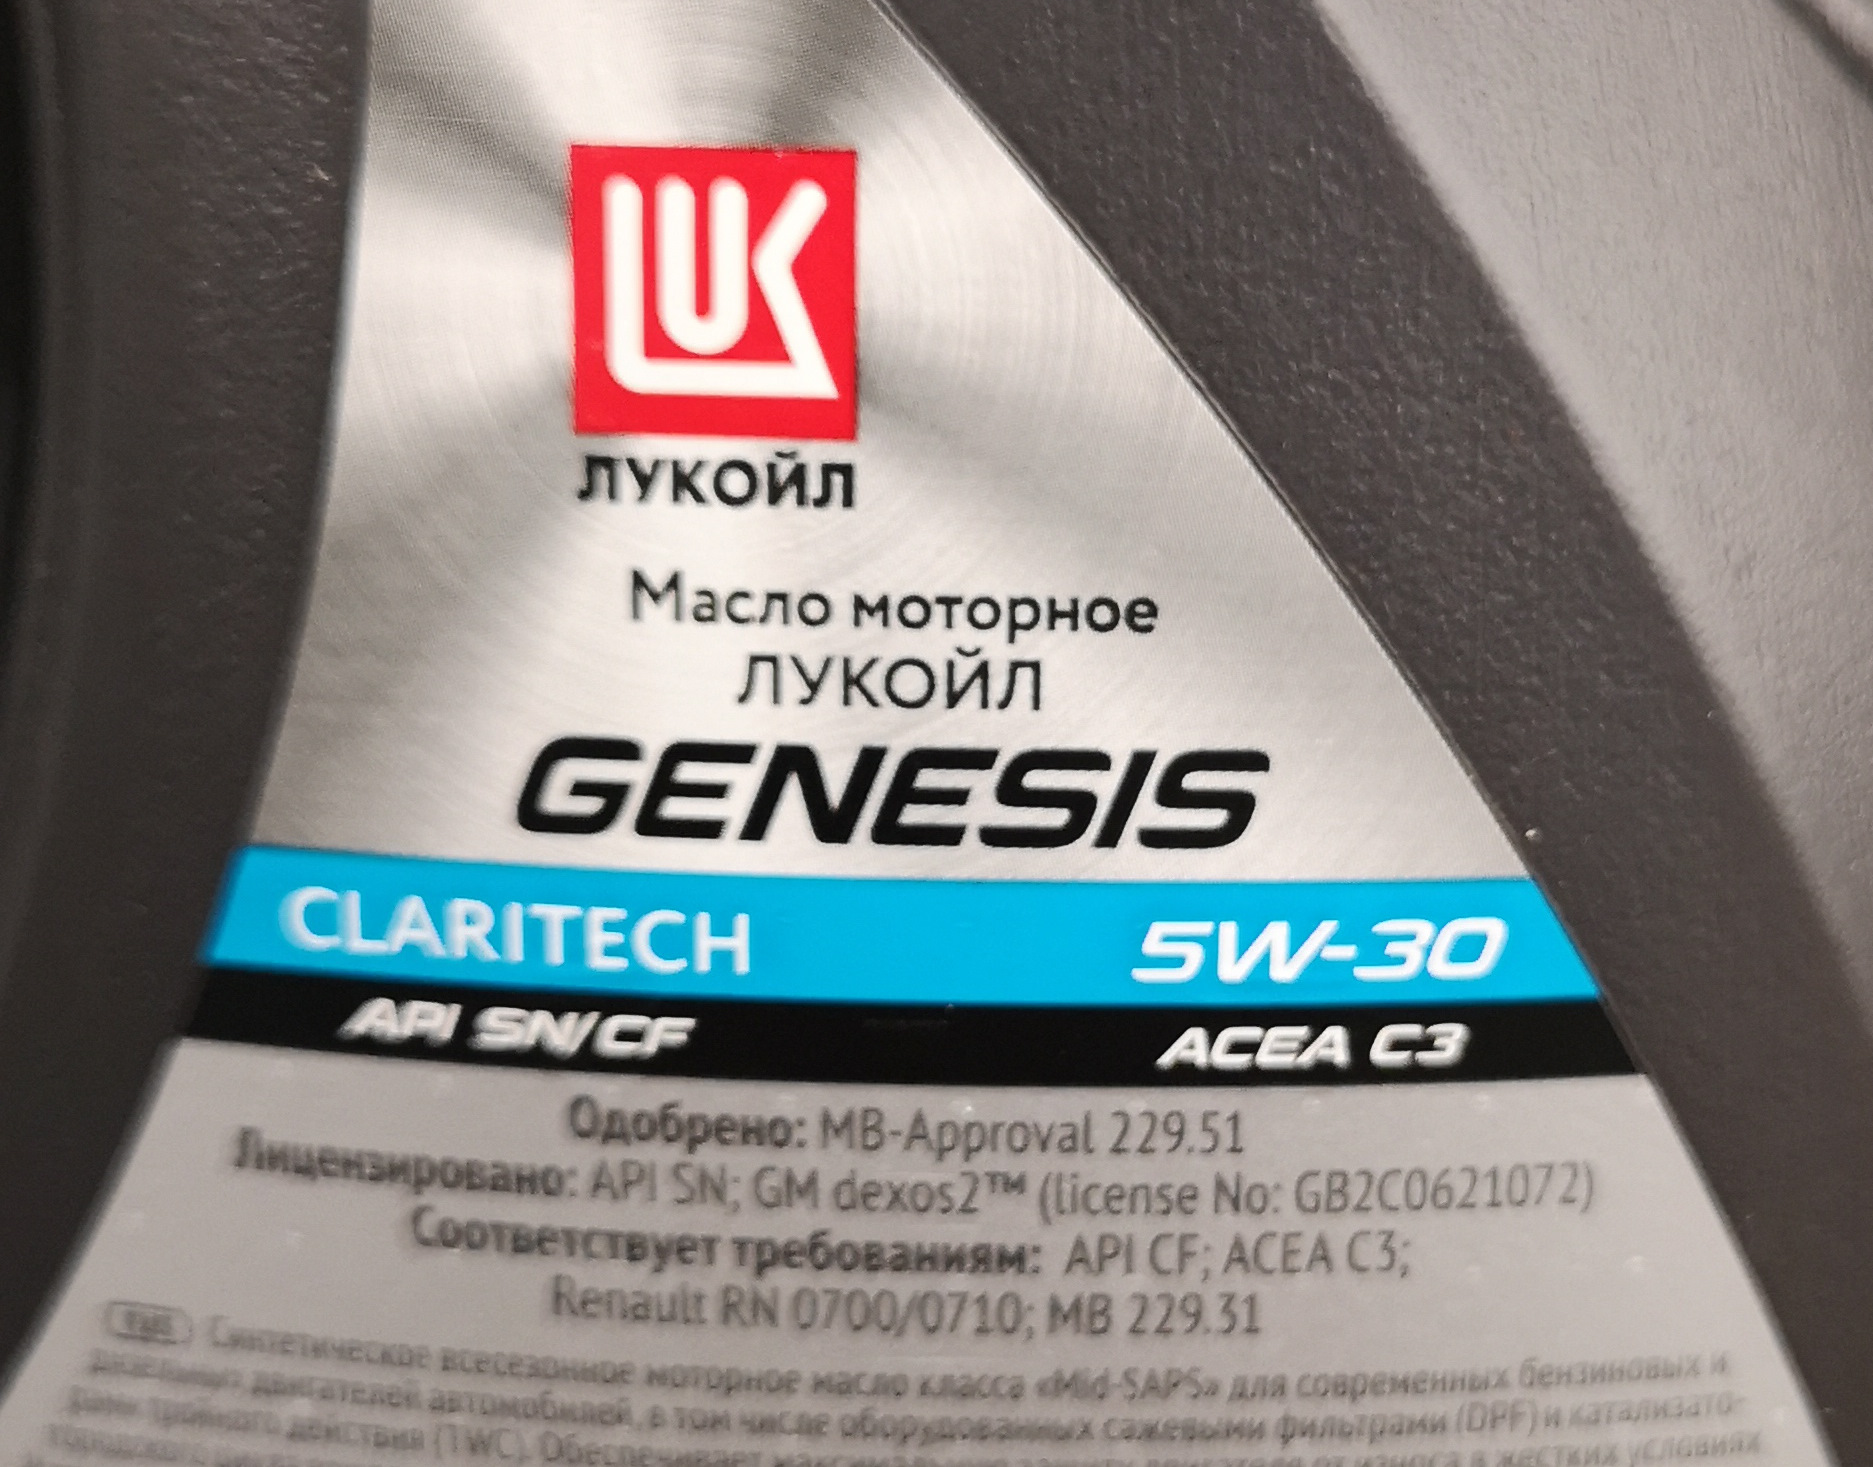 Как проверить масло лукойл генезис. Lukoil Genesis Claritech 5w-30 dexos2. Масло Лукойл Генезис Dexos 2. Лукойл Генезис dexos2 допуск. Стойка Лукойл Генезис.